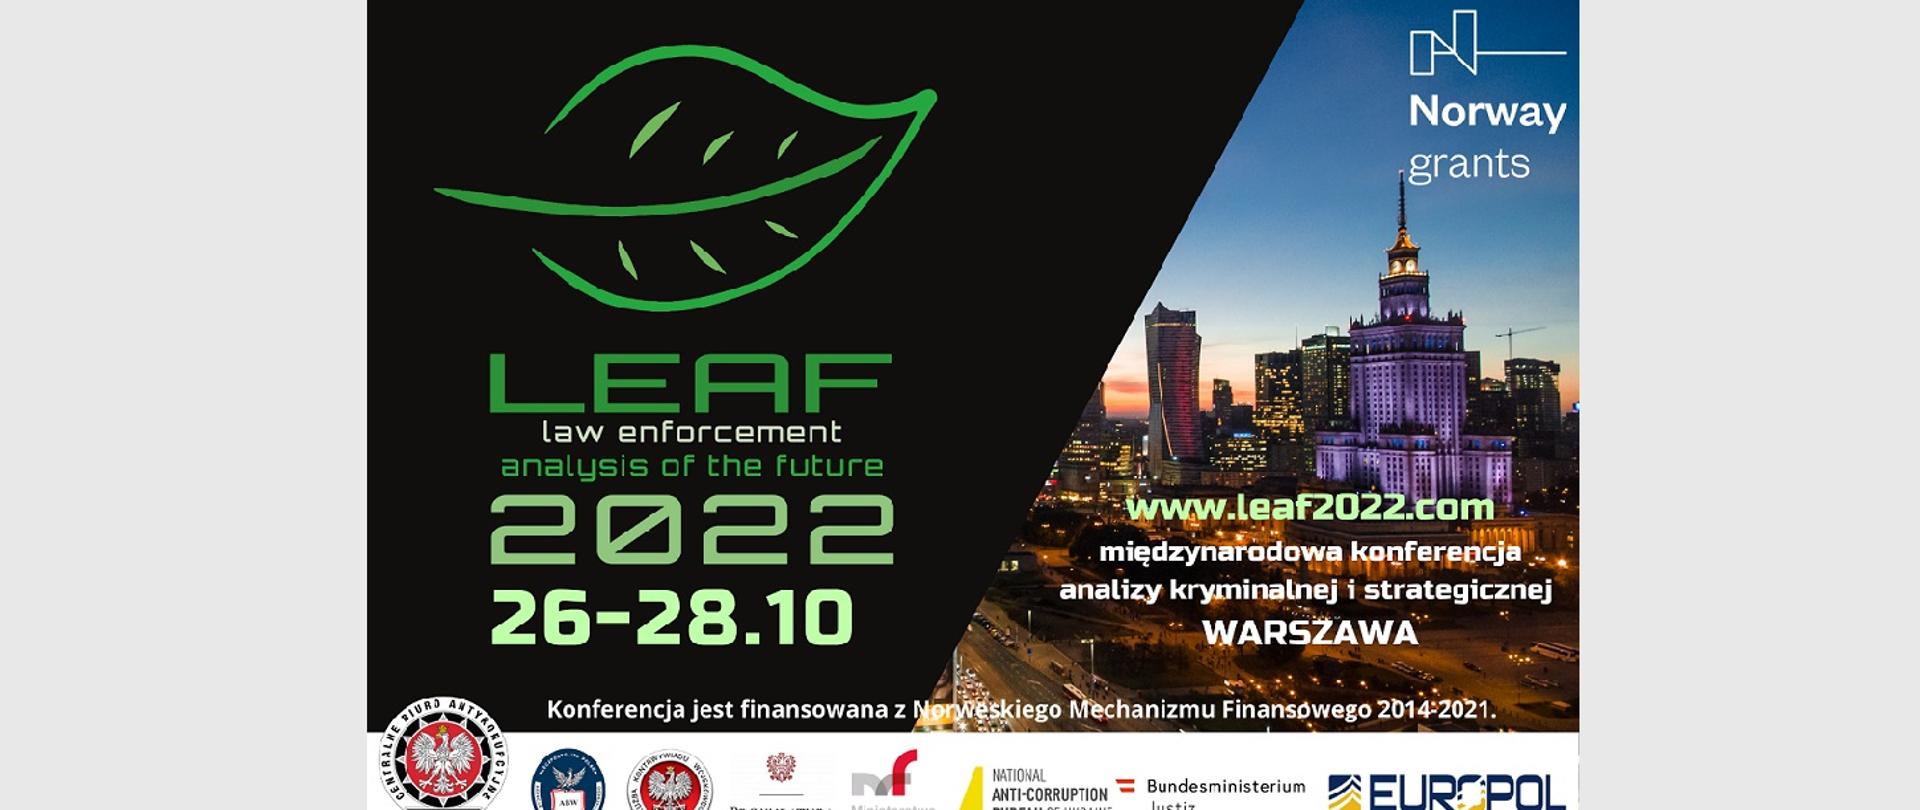 Zaproszenie do udziału w międzynarodowej konferencji LEAF 2022 (Law Enforcement Analysis of the Future) w dniach 26-28 października 2022 r. w Warszawie